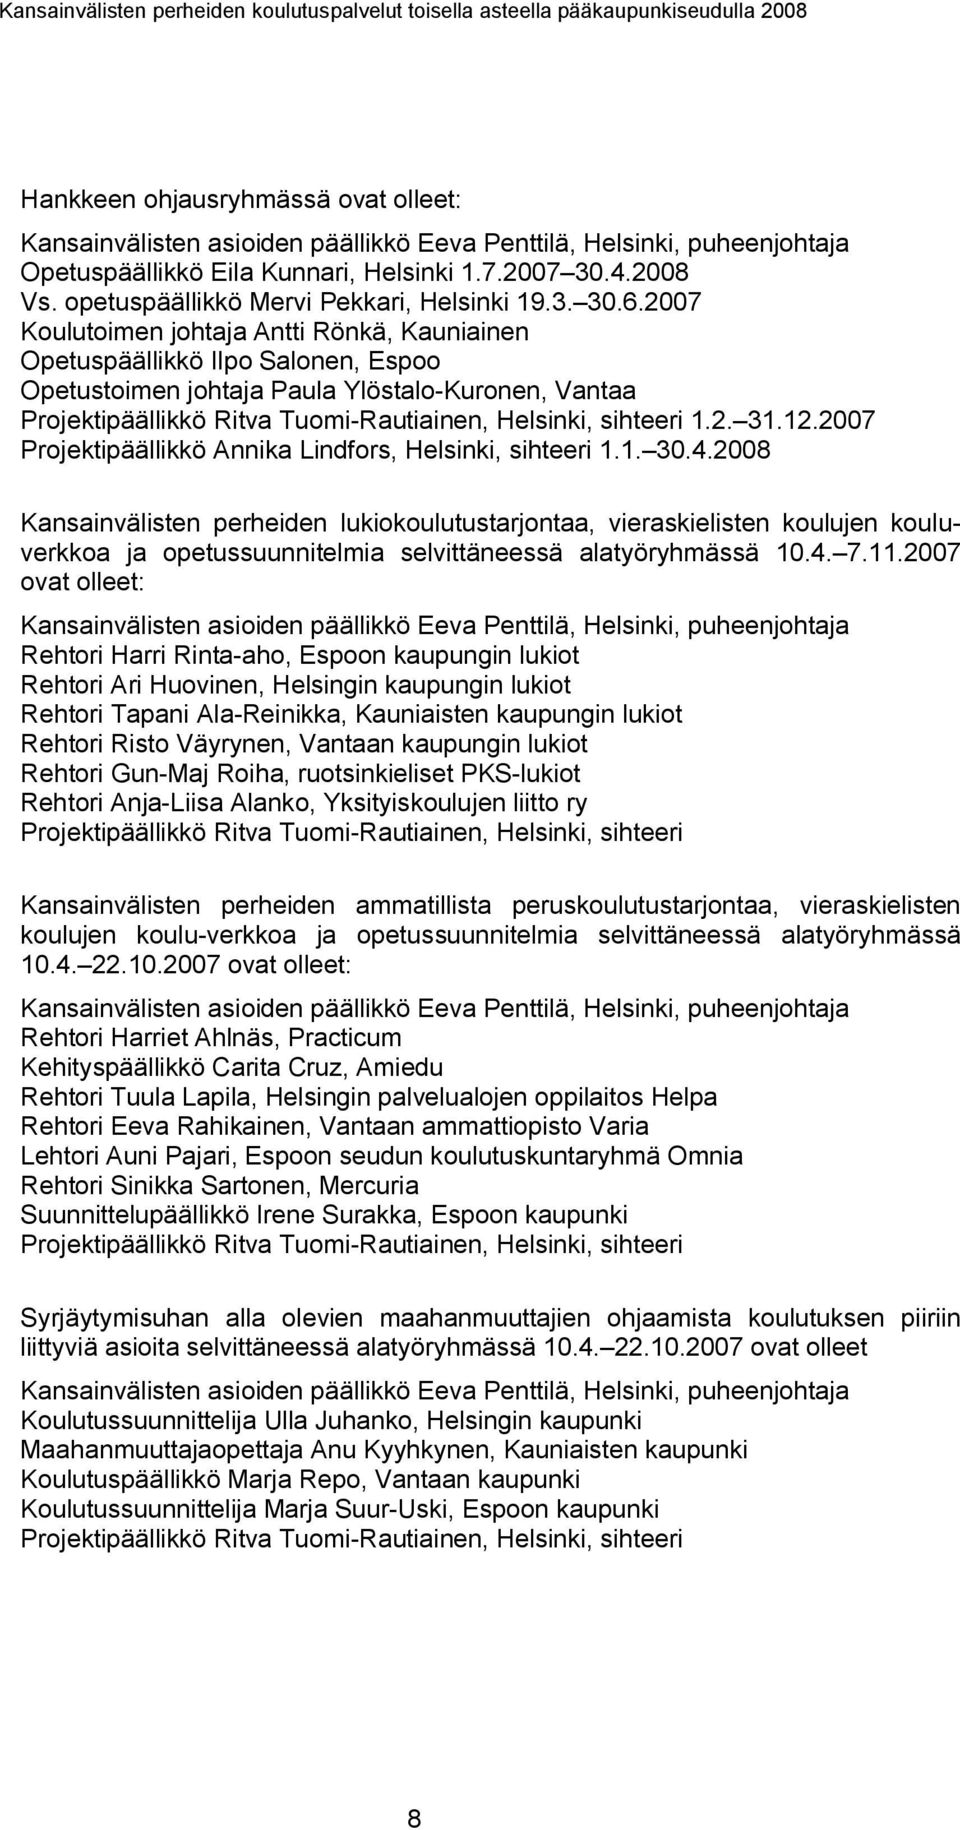 2007 Koulutoimen johtaja Antti Rönkä, Kauniainen Opetuspäällikkö Ilpo Salonen, Espoo Opetustoimen johtaja Paula Ylöstalo-Kuronen, Vantaa Projektipäällikkö Ritva Tuomi-Rautiainen, Helsinki, sihteeri 1.